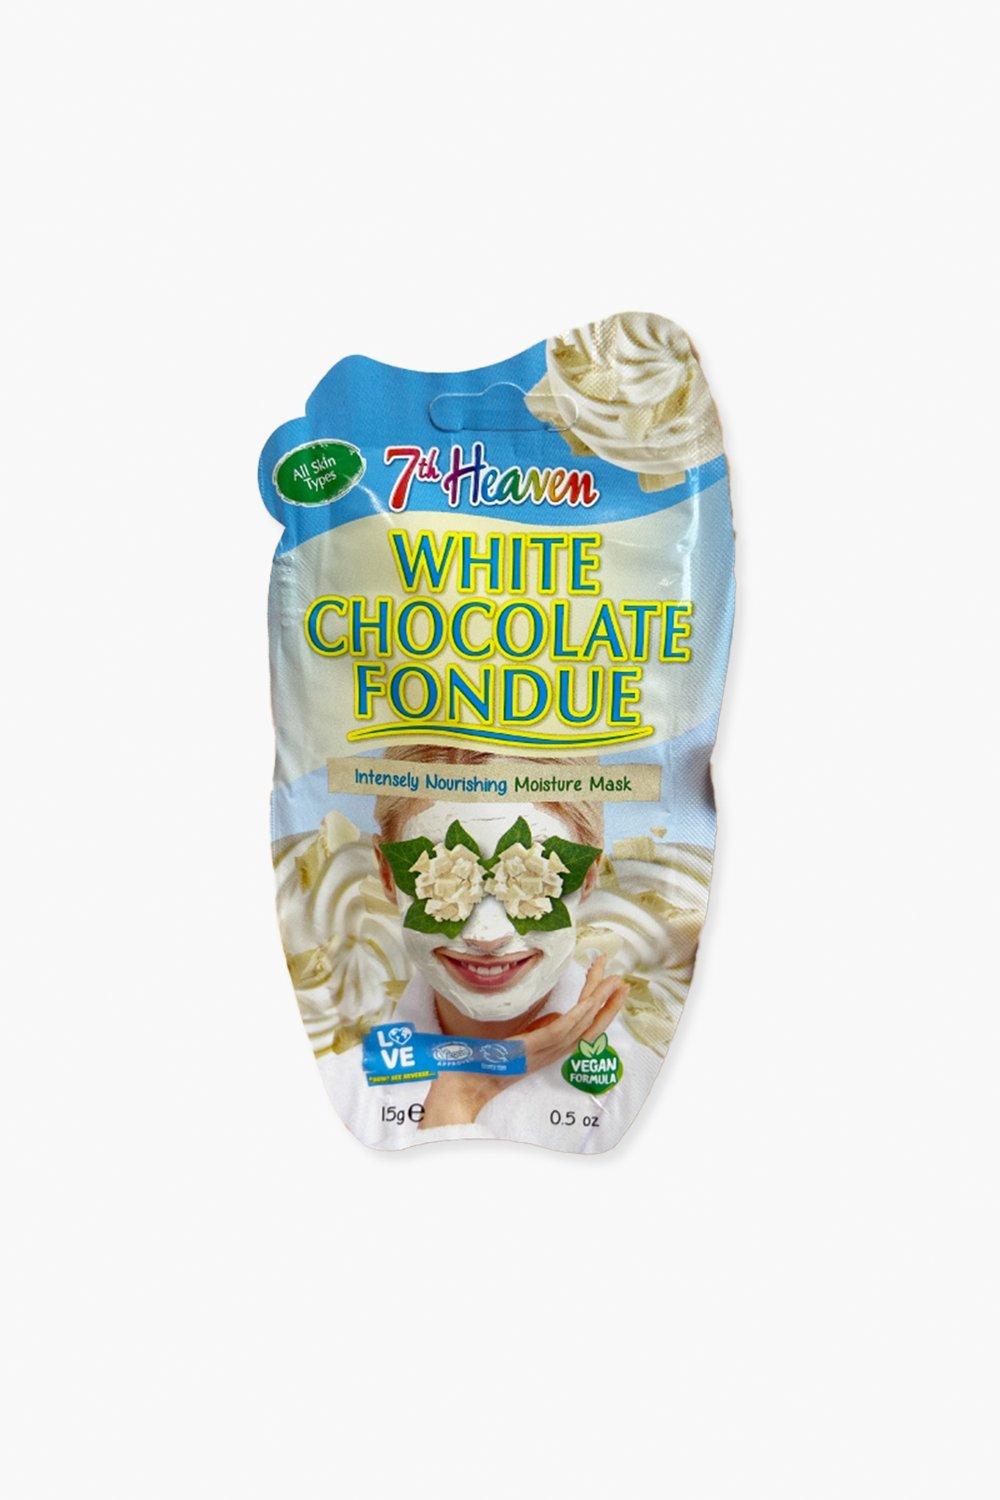 Boohoo - 7th heaven white chocolate fondue gezichtsmasker, white